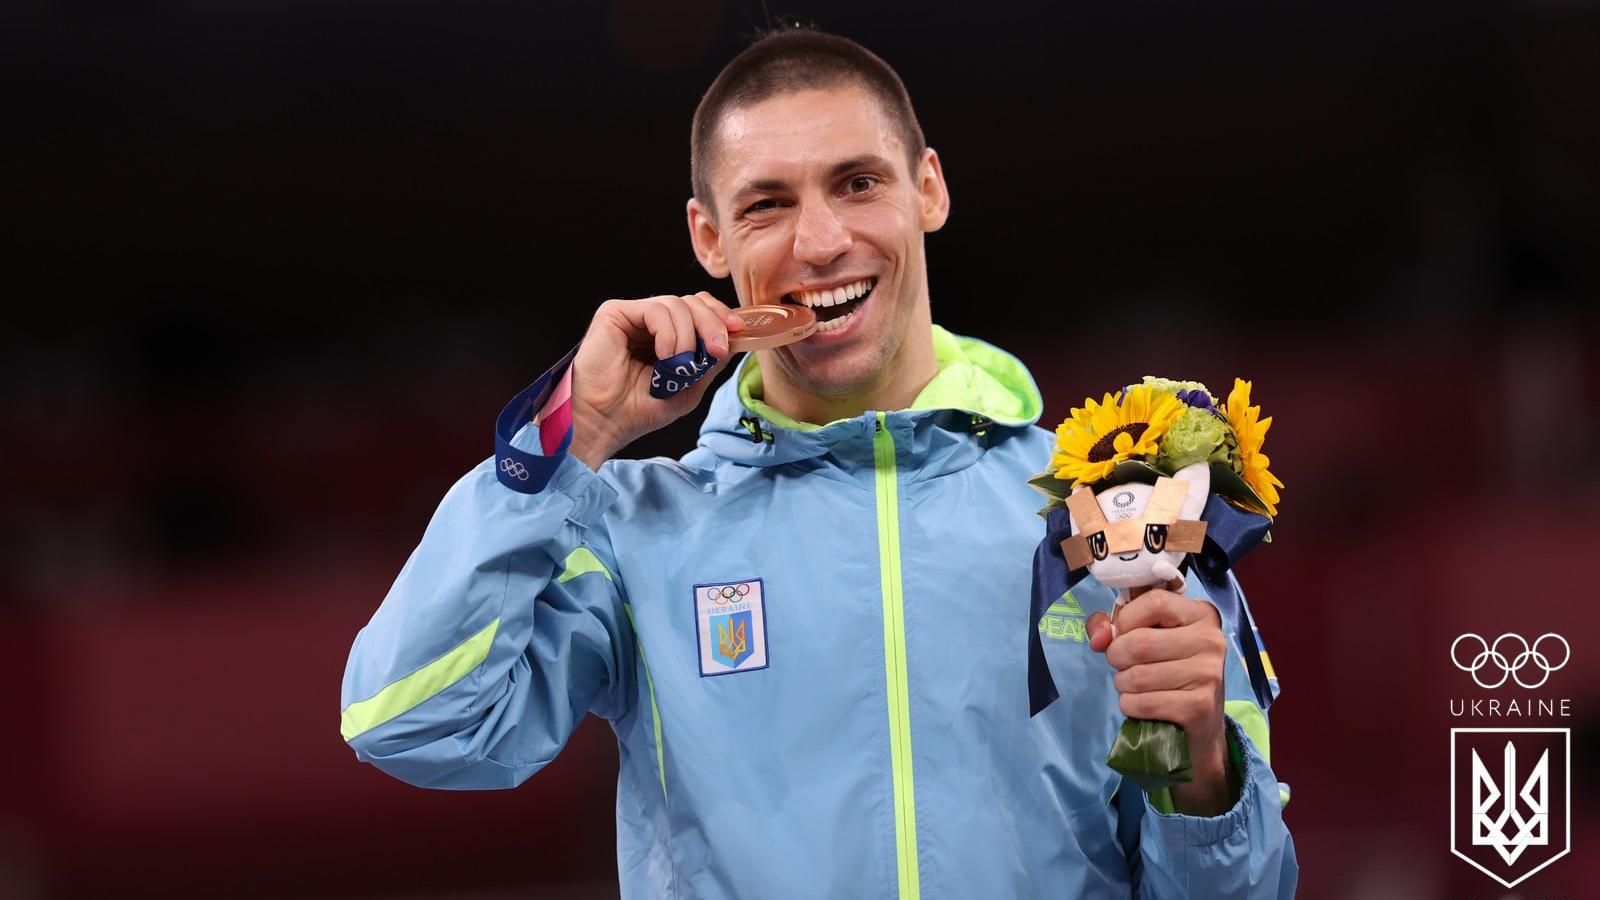 Горуна показал прием из каратэ на украинском олимпийском чемпионе: видео